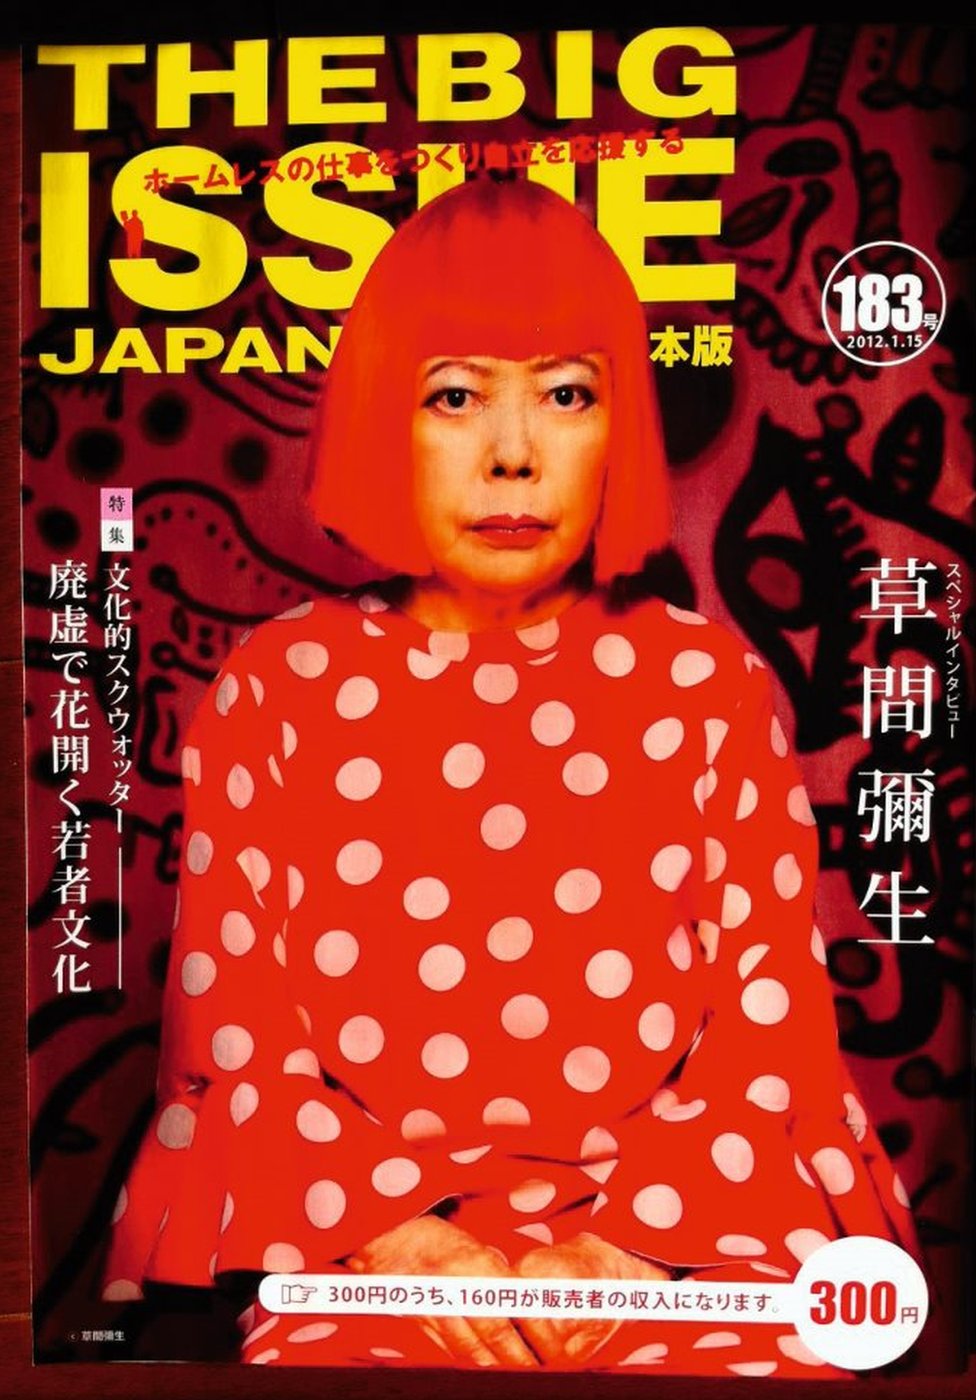 Обложка, с которой начался выпуск Big Issue в Японии